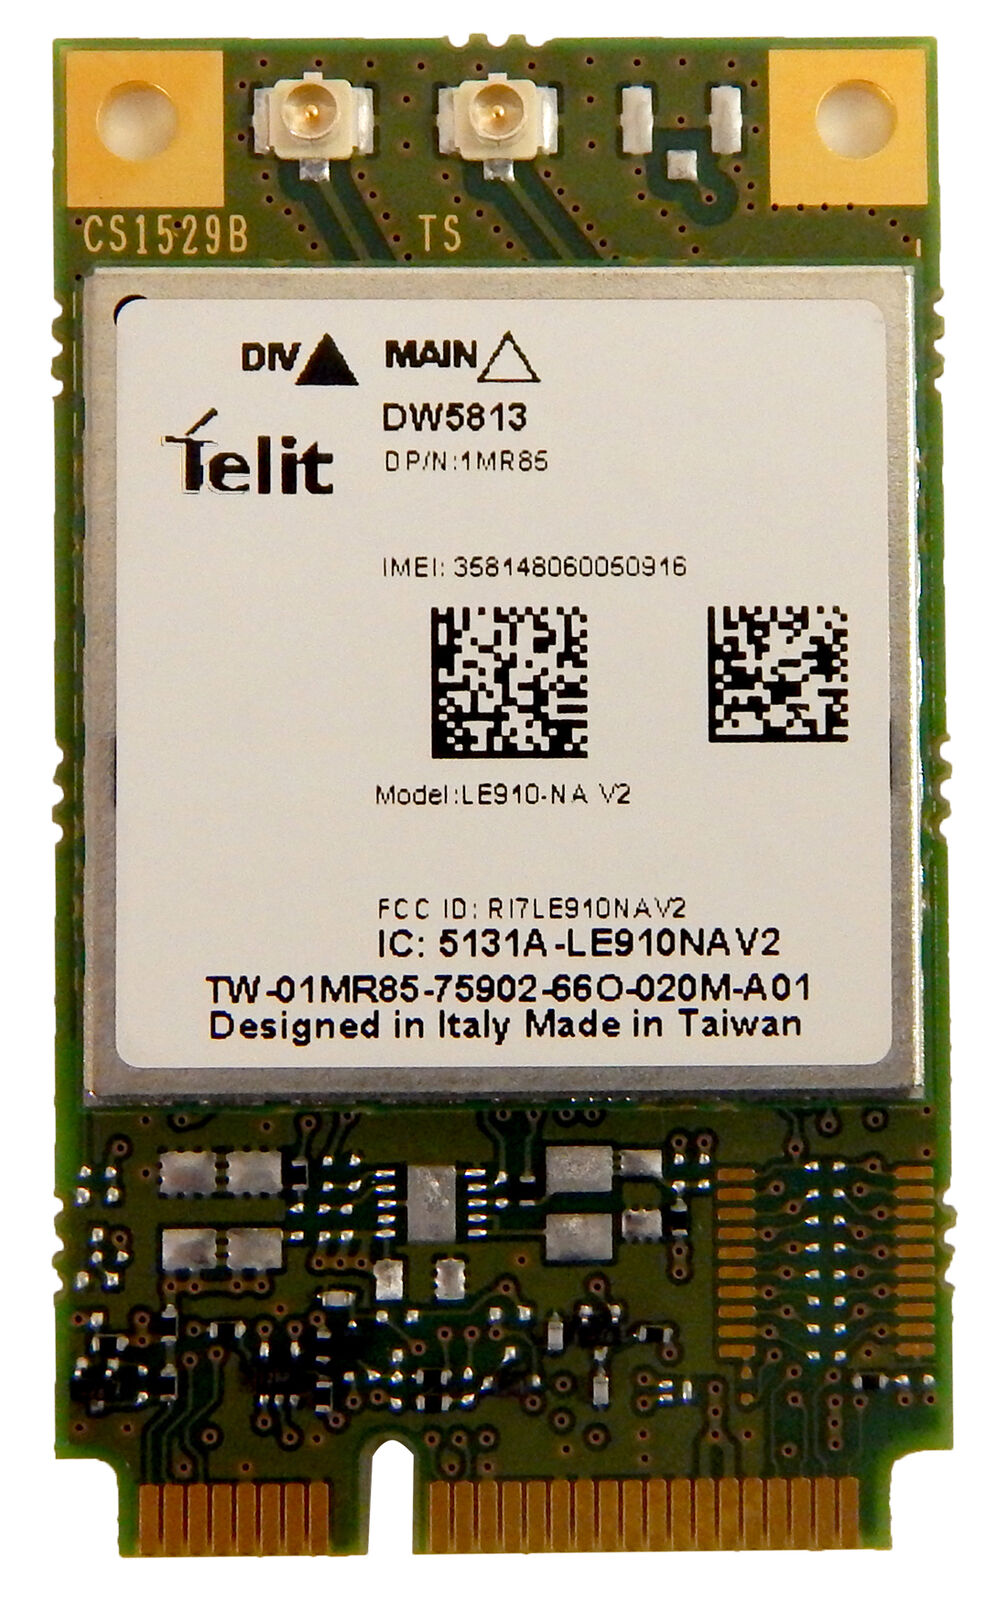 Dell DW5813 4G LTE LE910-NA V2 Mobile Broadband Card 1MR85 ATT